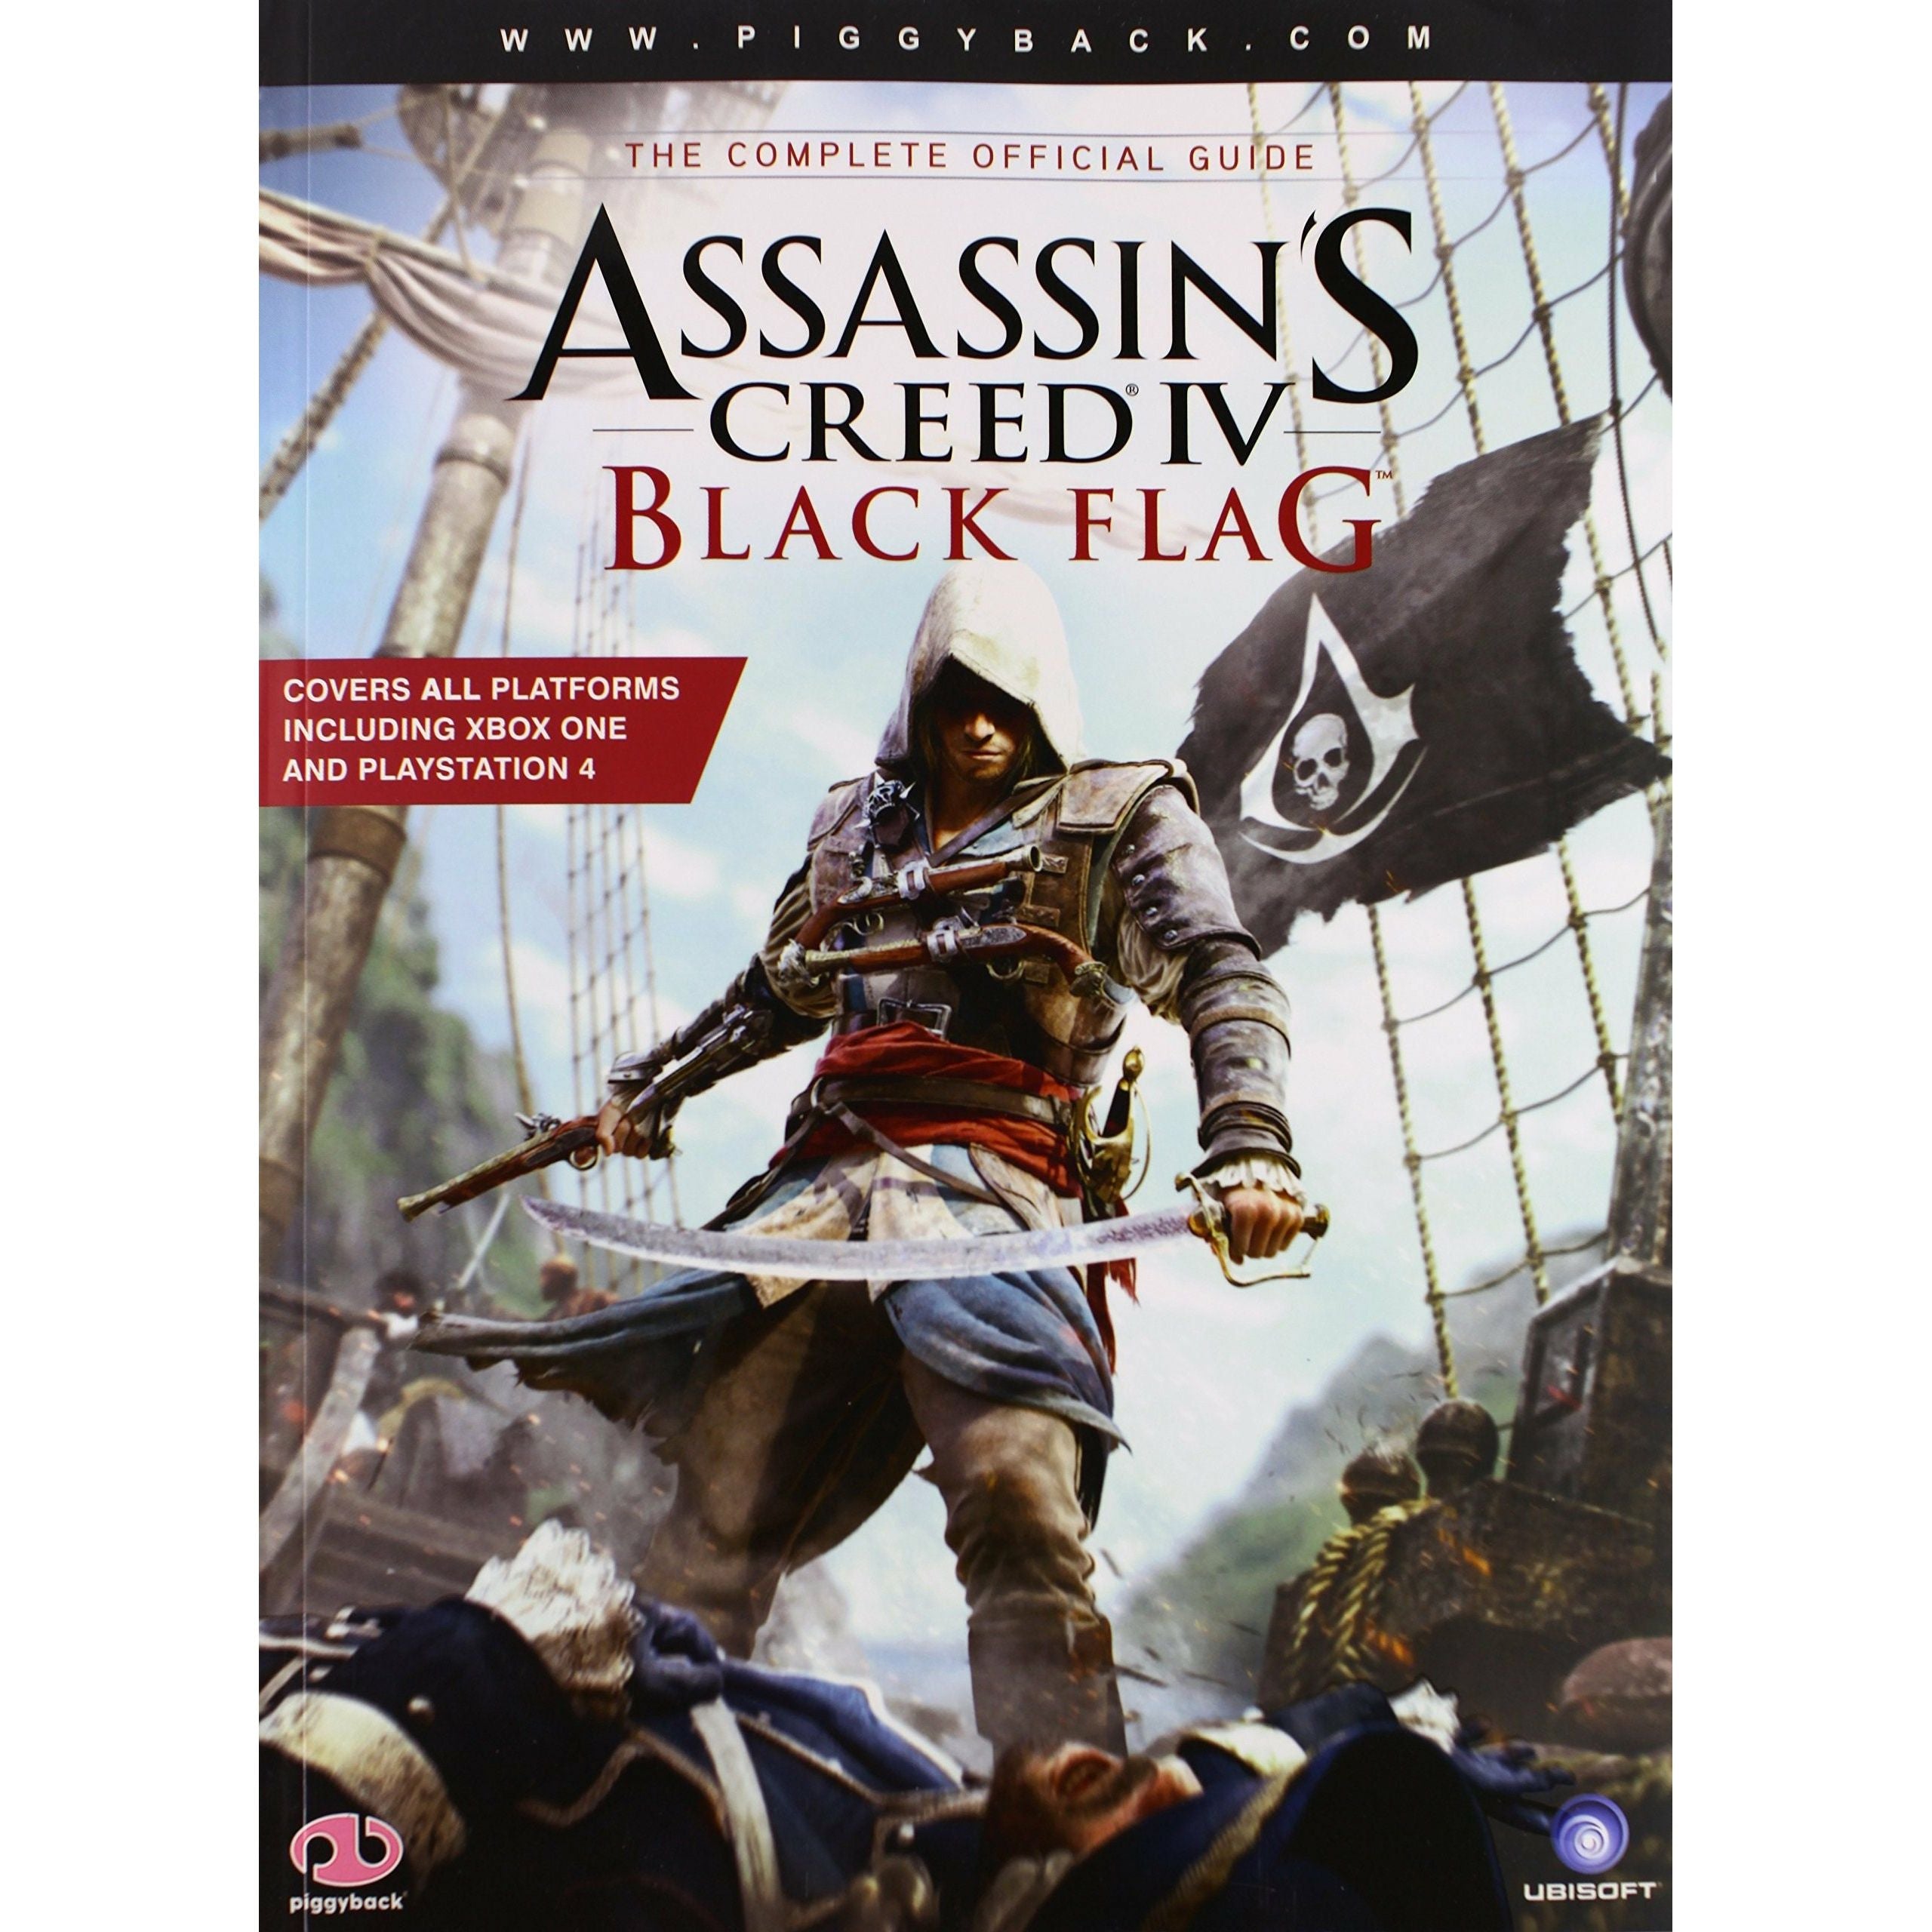 STRAT - Assassin's Creed IV Black Flag Le guide officiel complet par Piggyback